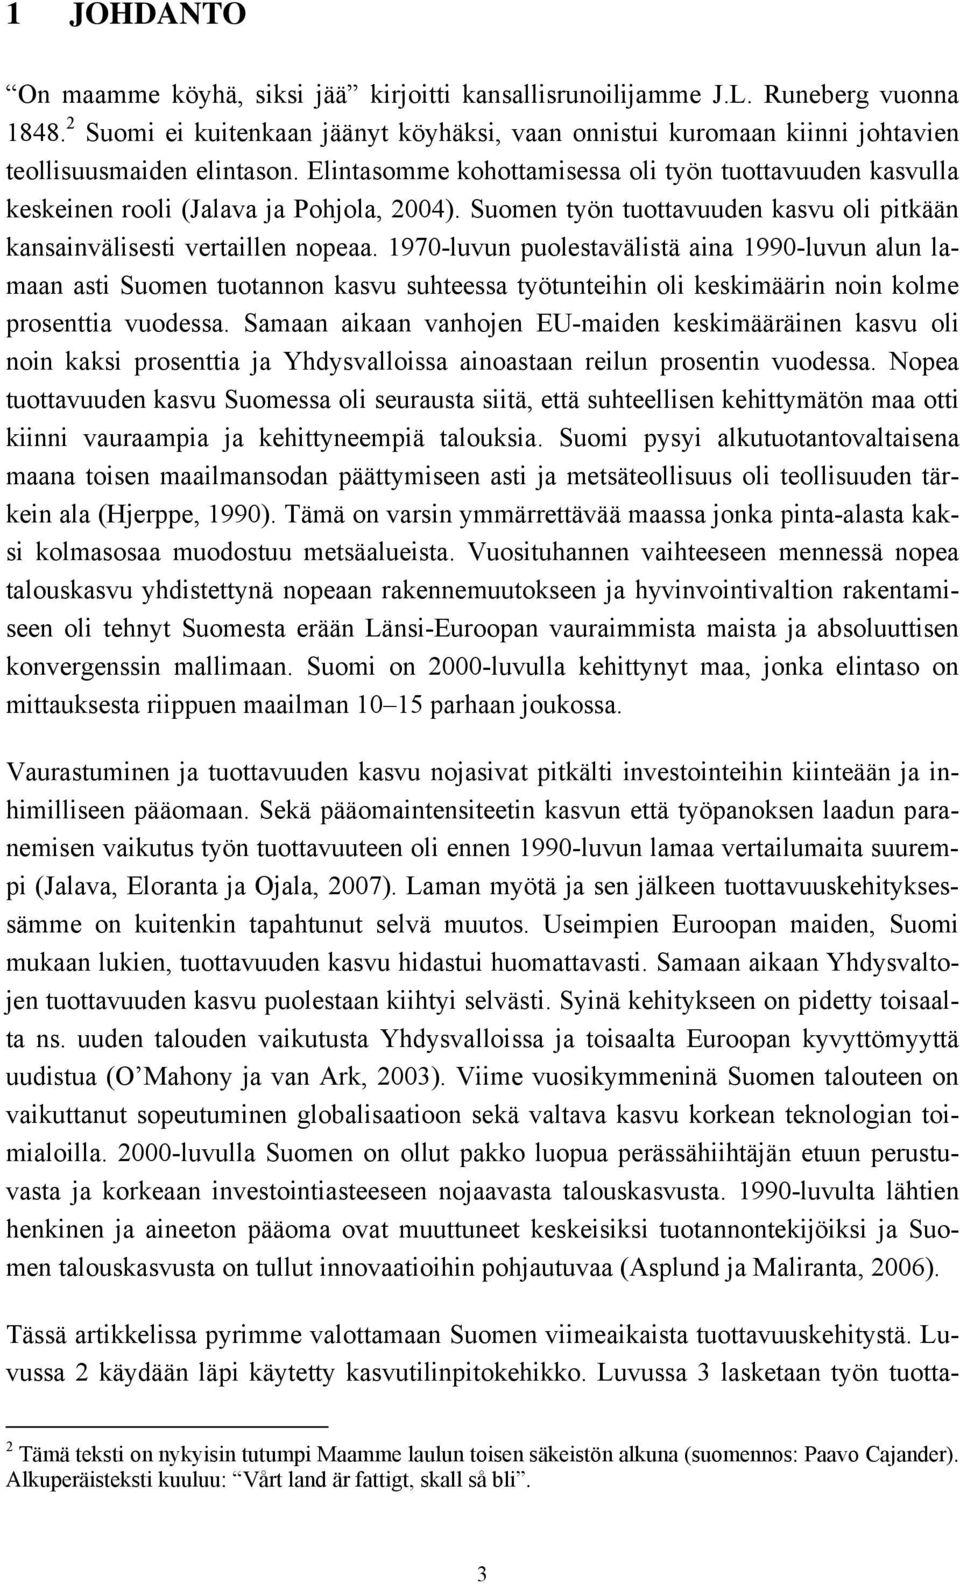 Elintasomme kohottamisessa oli työn tuottavuuden kasvulla keskeinen rooli (Jalava ja Pohjola, 2004). Suomen työn tuottavuuden kasvu oli pitkään kansainvälisesti vertaillen nopeaa.